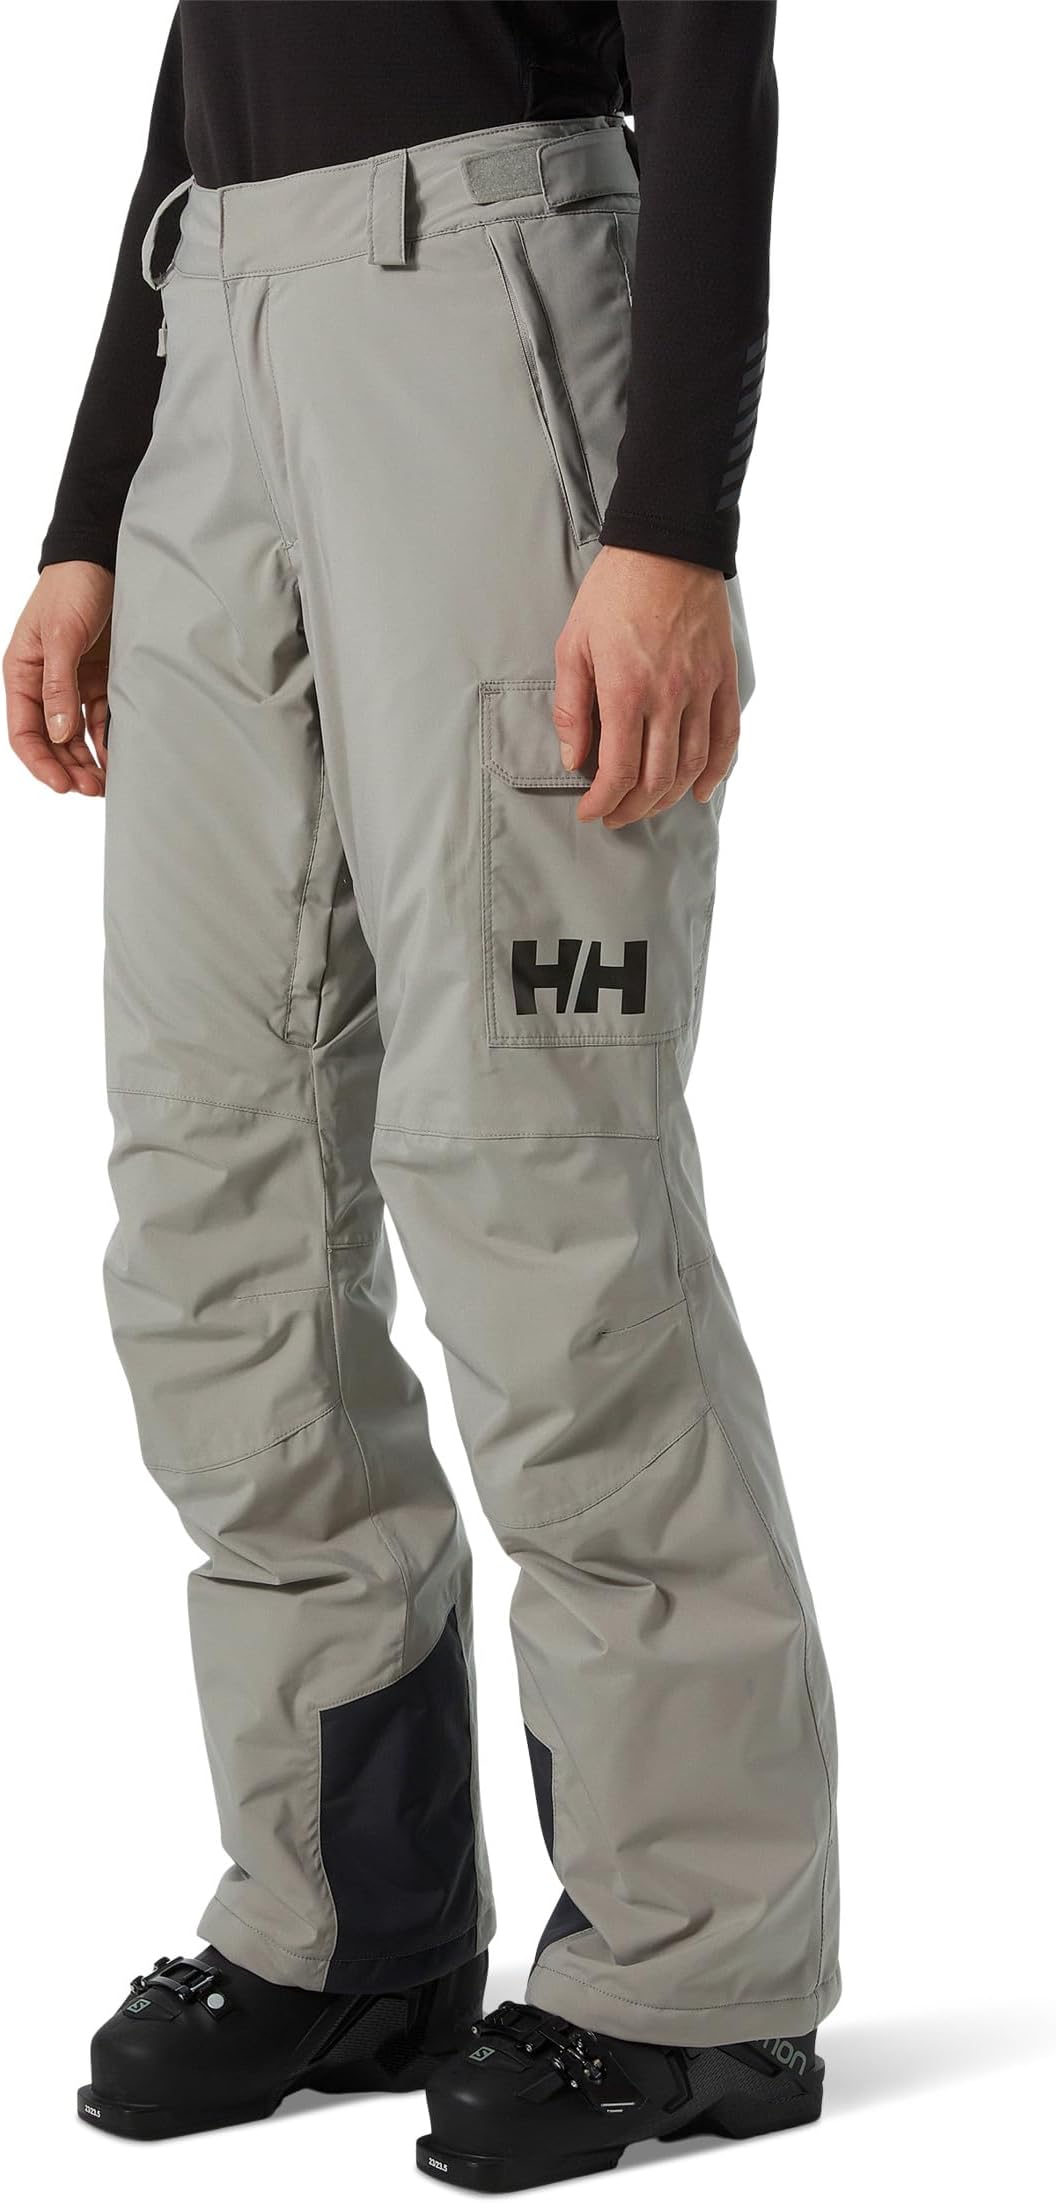 брюки legendary insulated pants helly hansen цвет terrazzo Брюки Switch Cargo Insulated Pants Helly Hansen, цвет Terrazzo